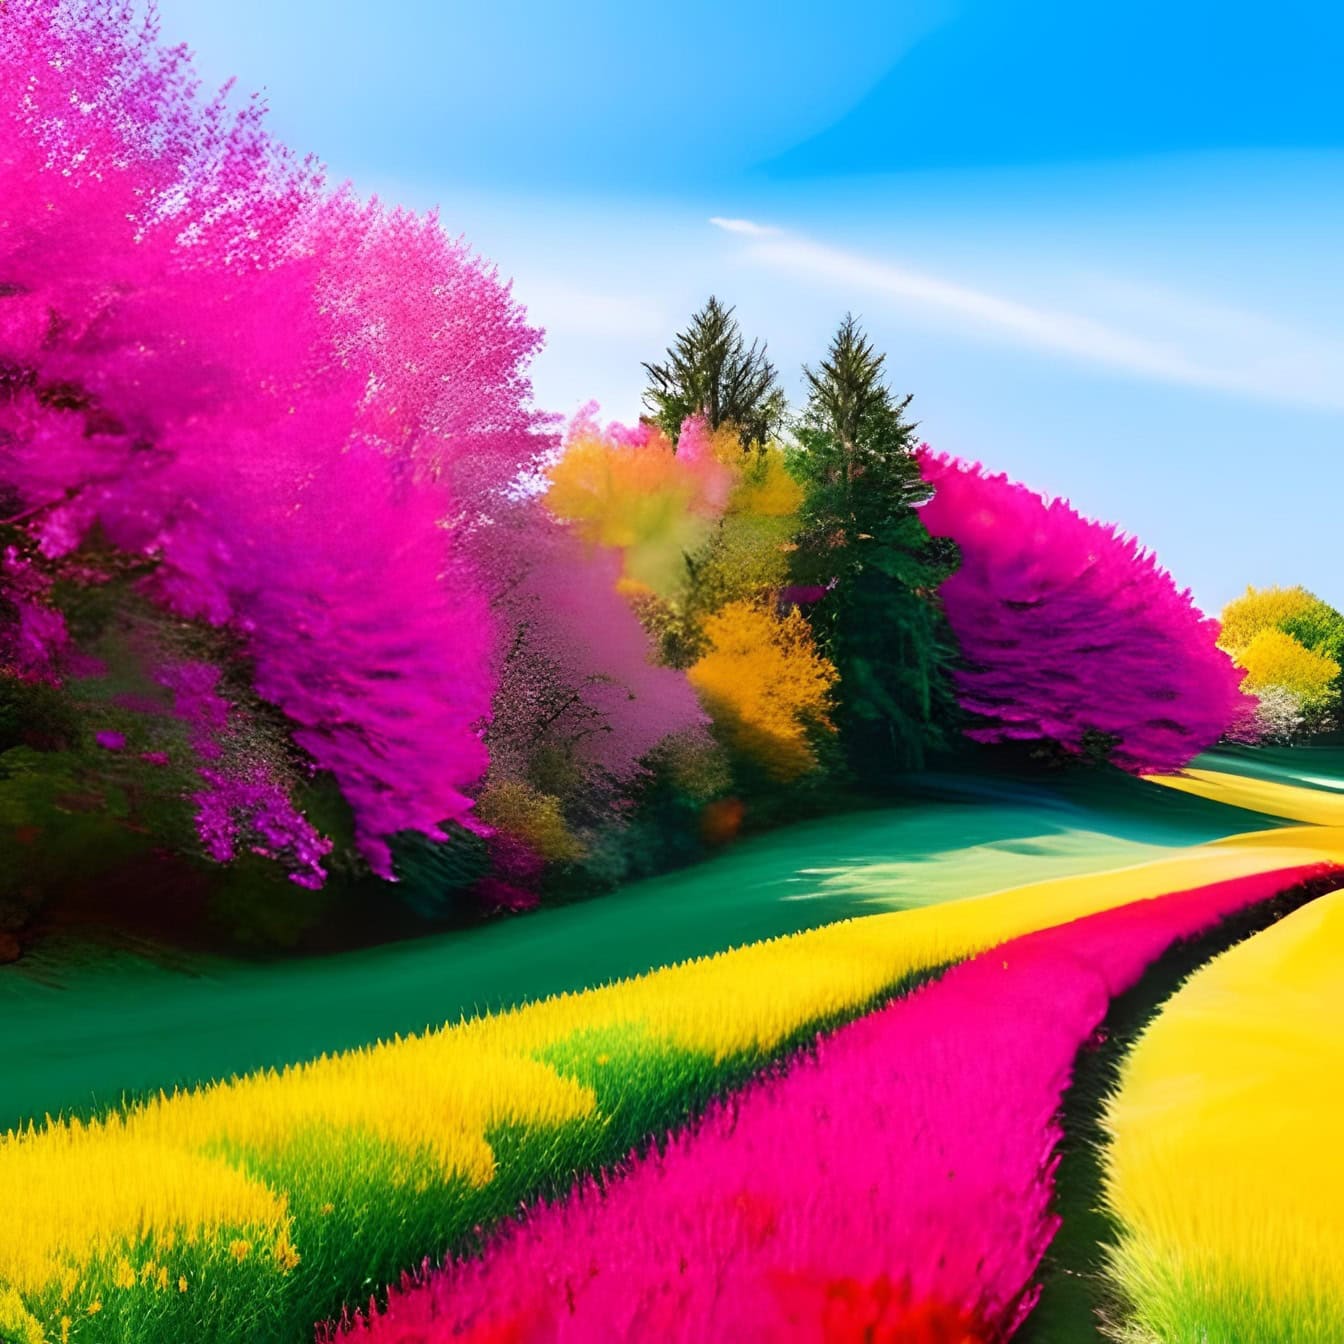 Яркая графическая иллюстрация с фиолетово-розовыми тонами полей и деревьев